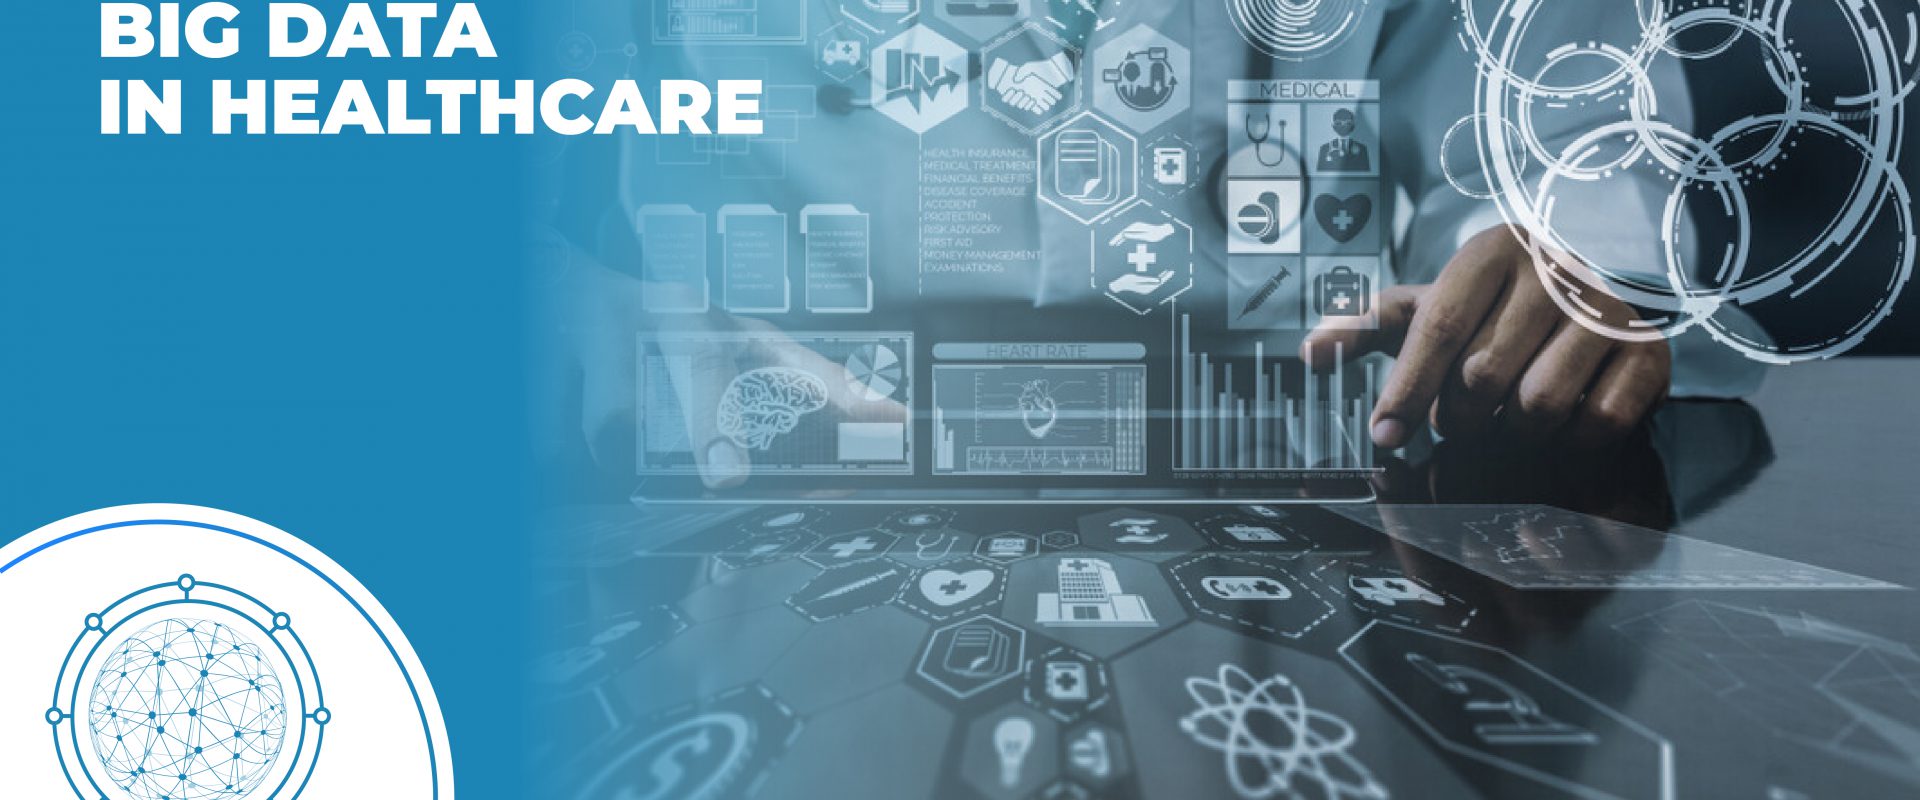 Big Data in Healthcare - Tech Magazine